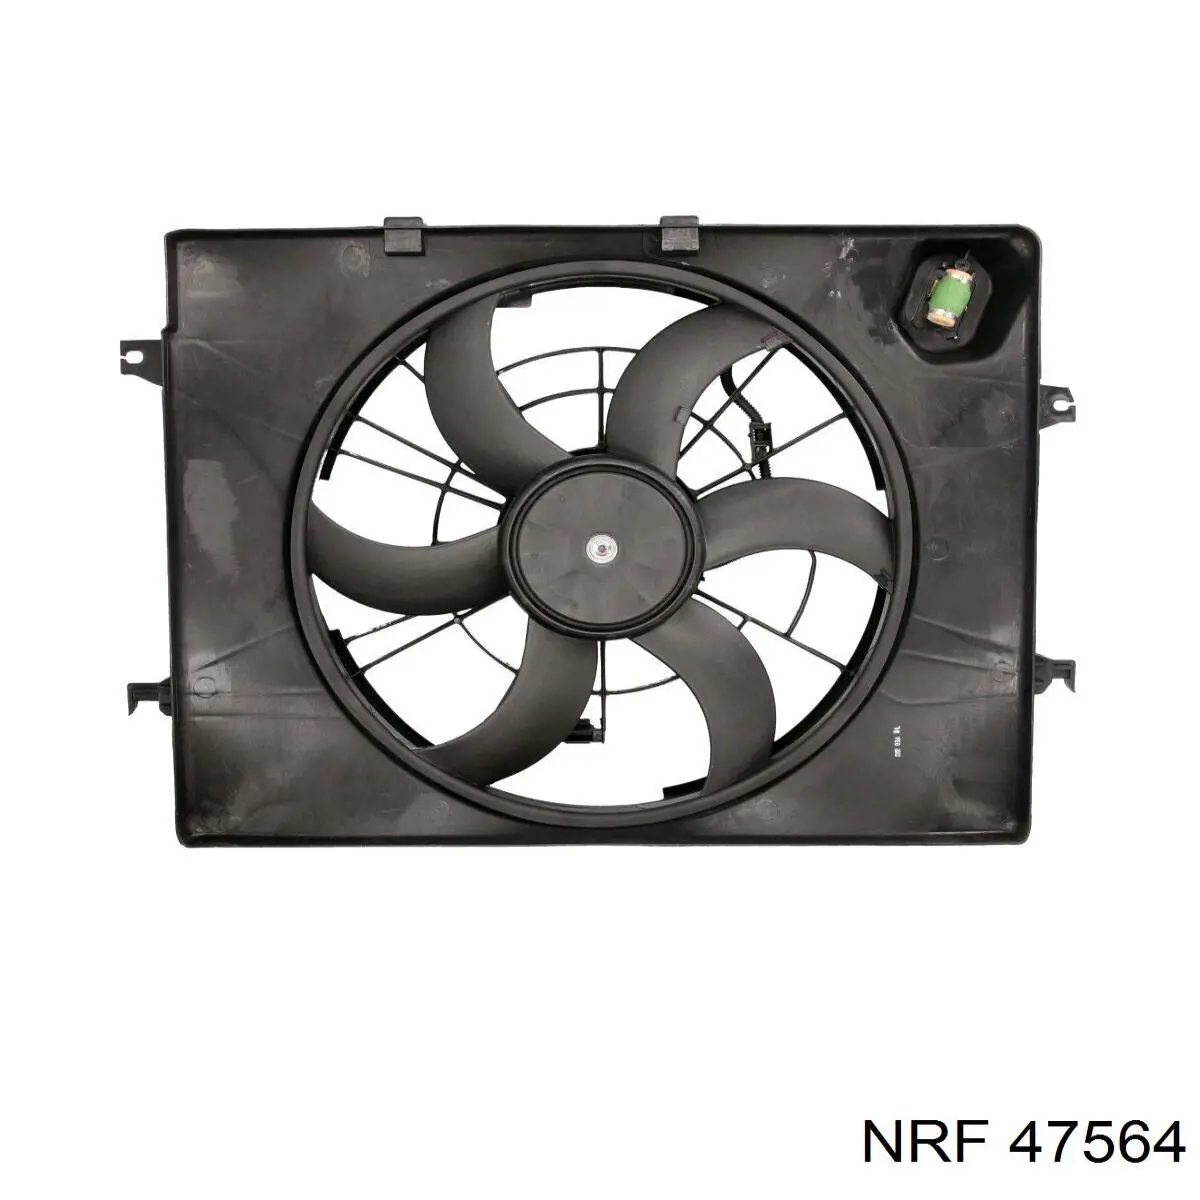 Difusor de radiador, ventilador de refrigeración, condensador del aire acondicionado, completo con motor y rodete para KIA Optima (TF)